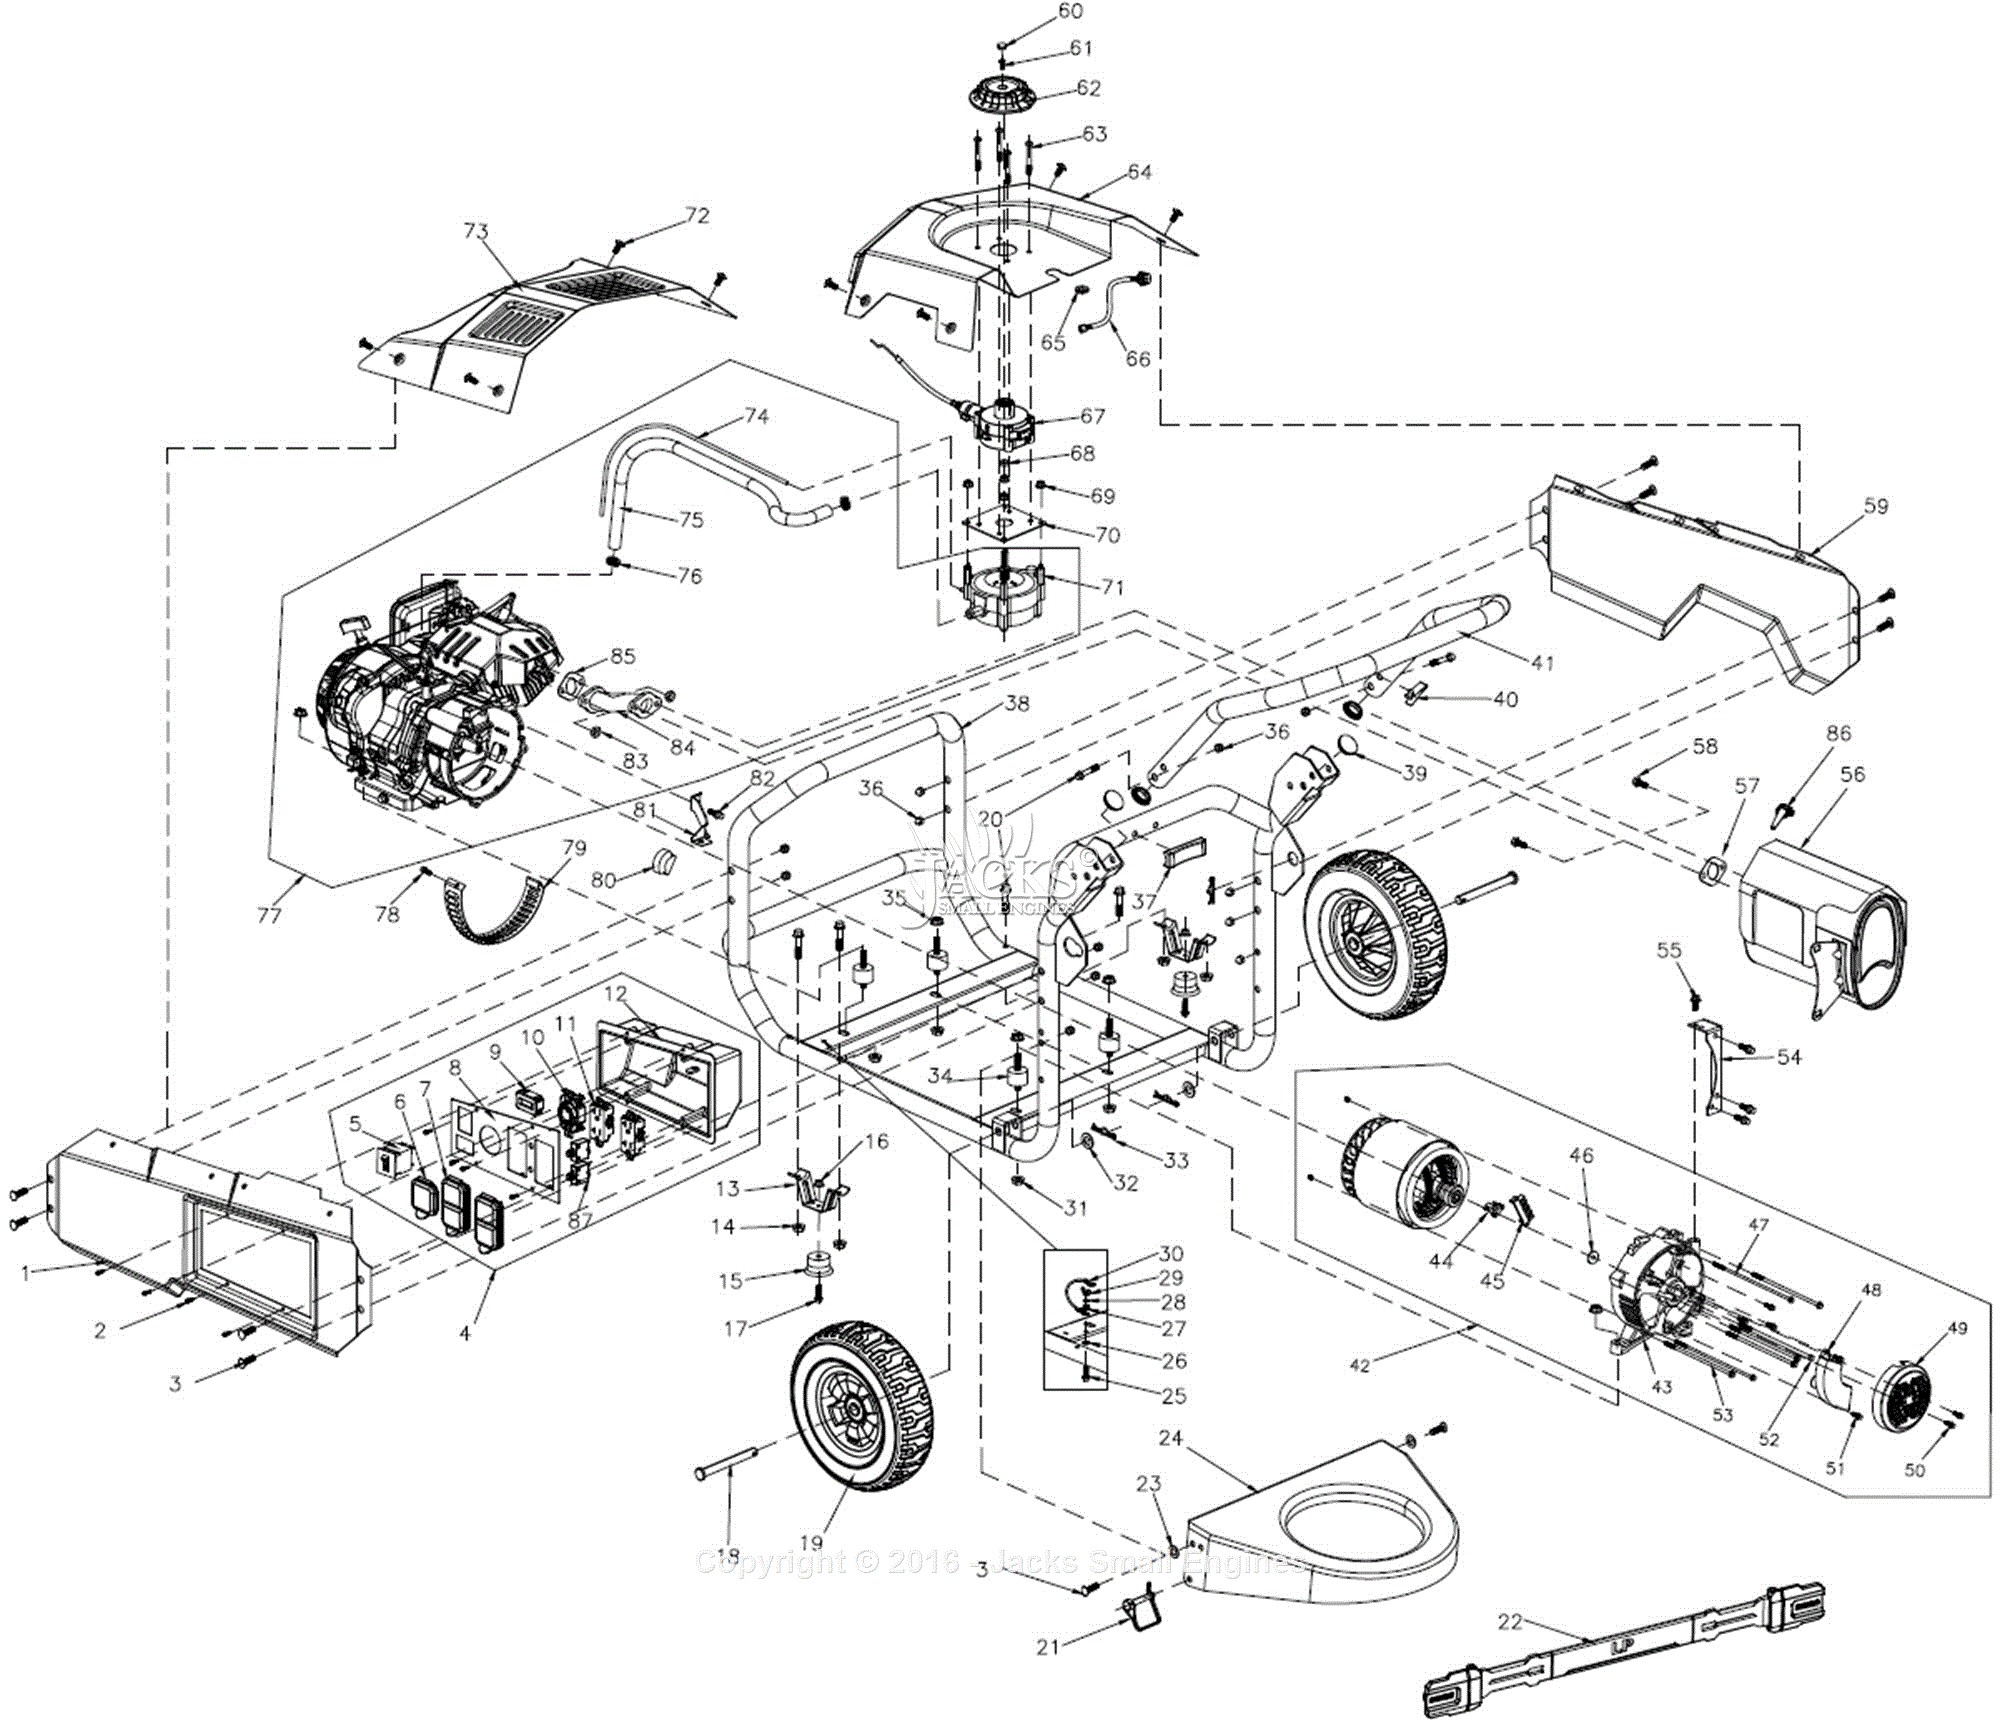 Car Parts Diagram for Engine Generac Lp5500 Parts Diagrams Of Car Parts Diagram for Engine